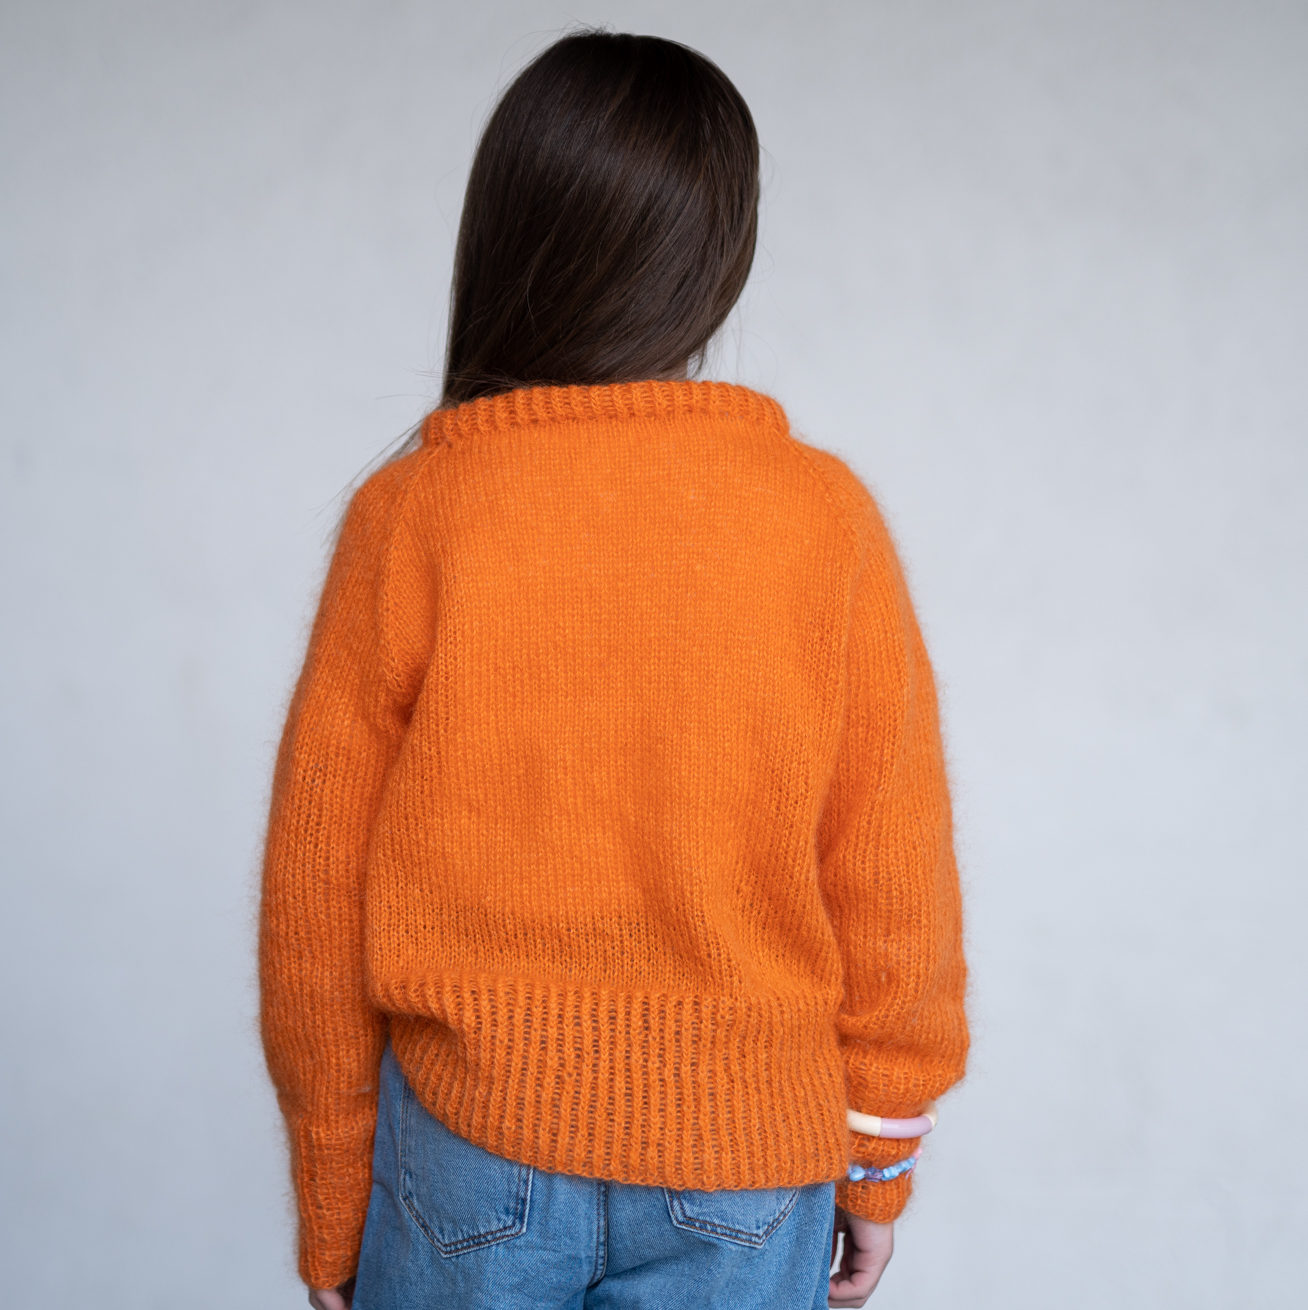  - Eben Sweater kids | Mohair sweater kids knitting kit - by HipKnitShop - 09/06/2020